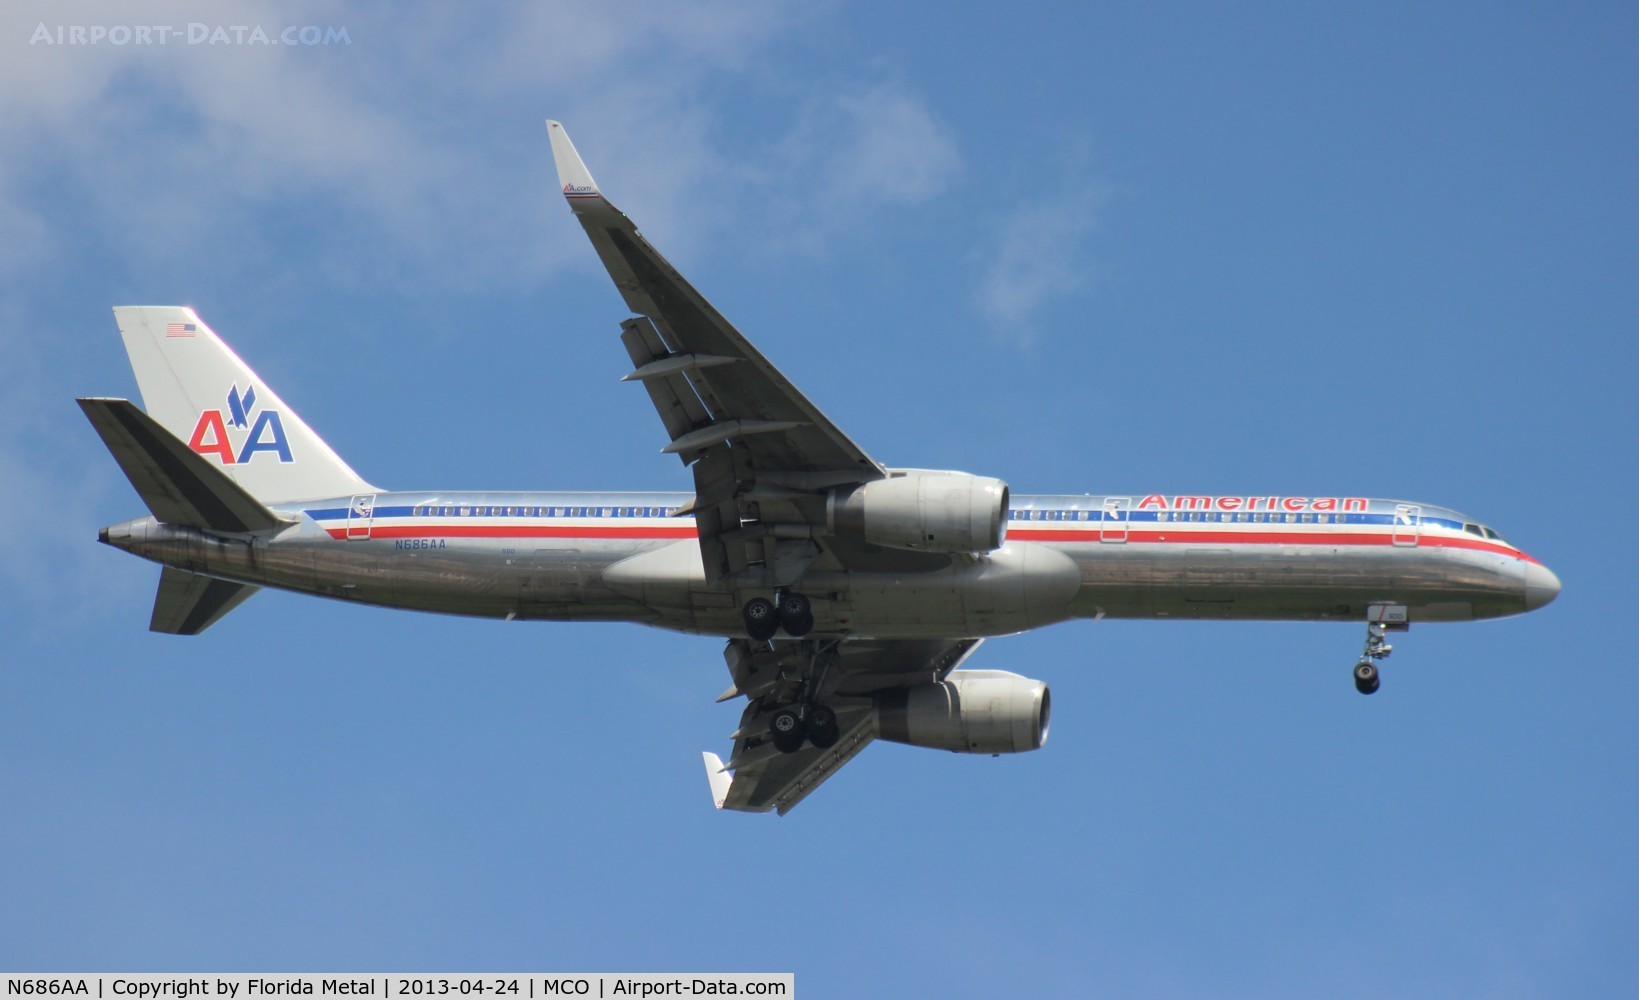 N686AA, 1992 Boeing 757-223 C/N 25343, American 757-200